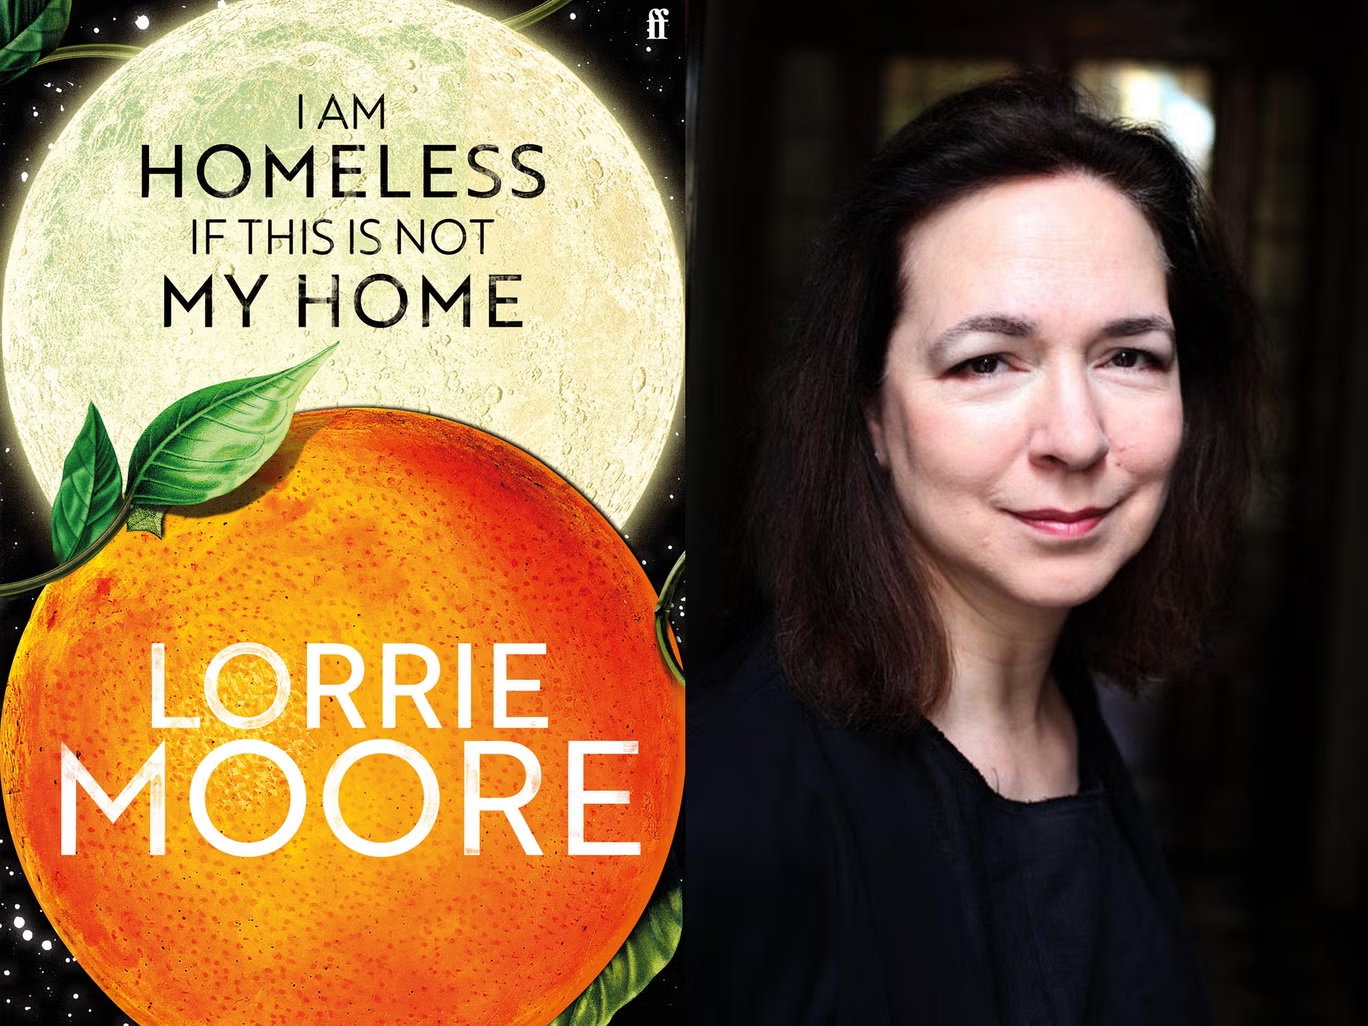  تستكشف رواية "أنا مشرد ما لم يكن هذا بيتي" للوري مور الموت والحزن والماضي بطريقة مفعمة بالحكمة والتعاطف (اندبندنت)